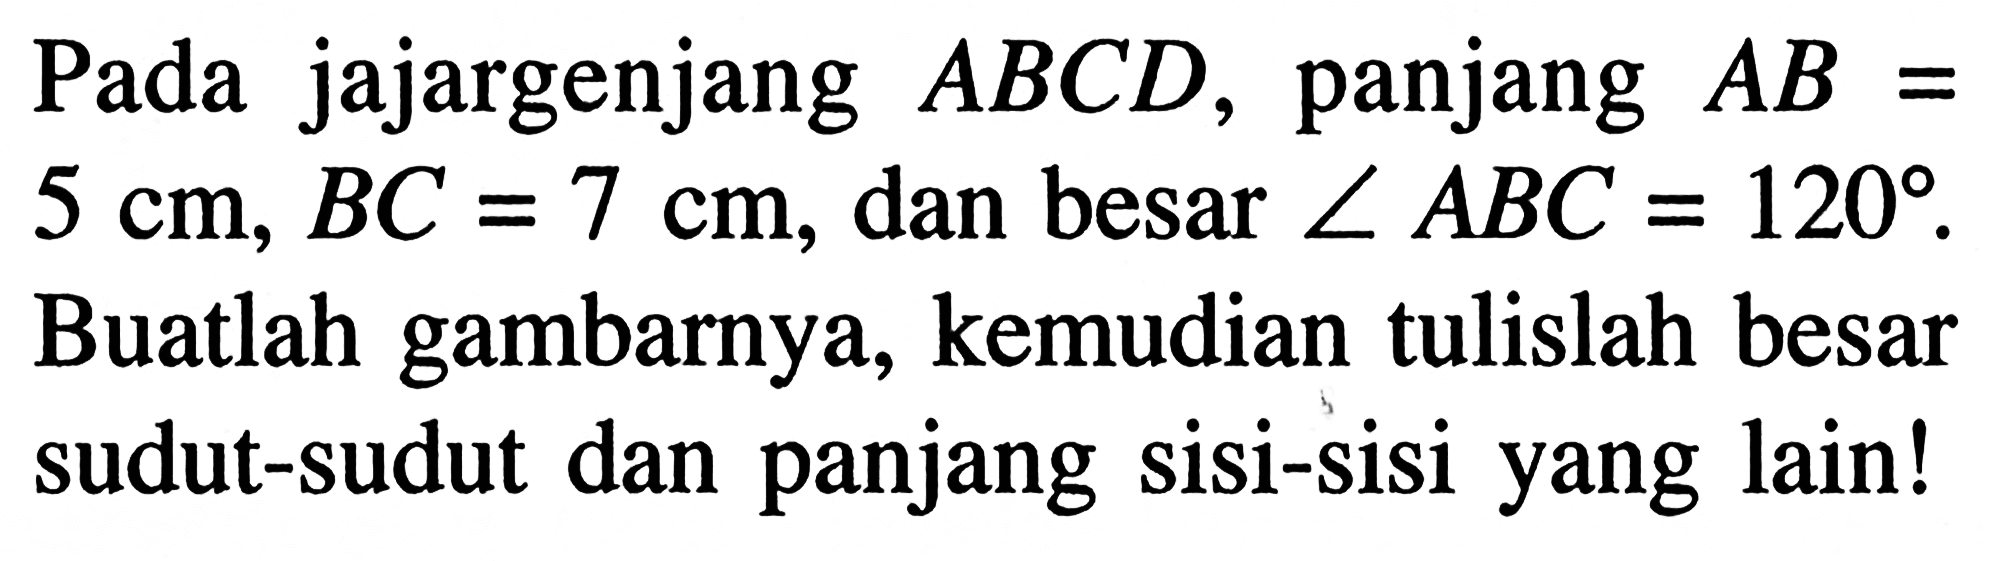 Pada jajargenjang ABCD, panjang AB=5 cm, BC=7 cm, dan besar sudut ABC=120. Buatlah gambarnya, kemudian tulislah besar sudut-sudut dan panjang sisi-sisi yang lain!